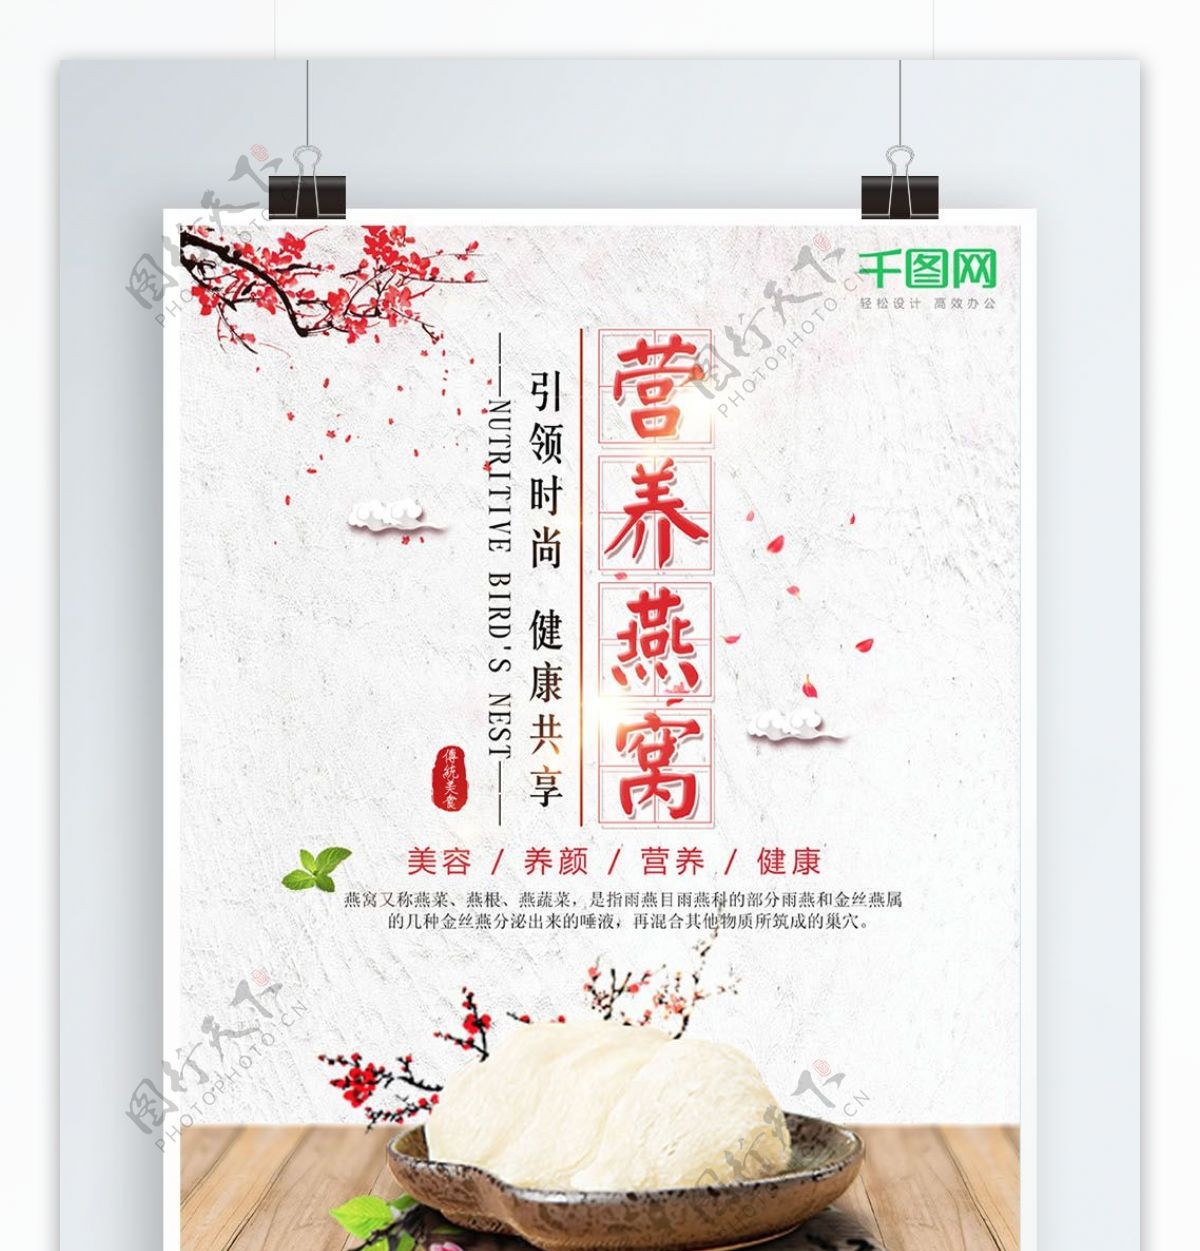 简约中国风燕窝养生滋补食疗海报设计